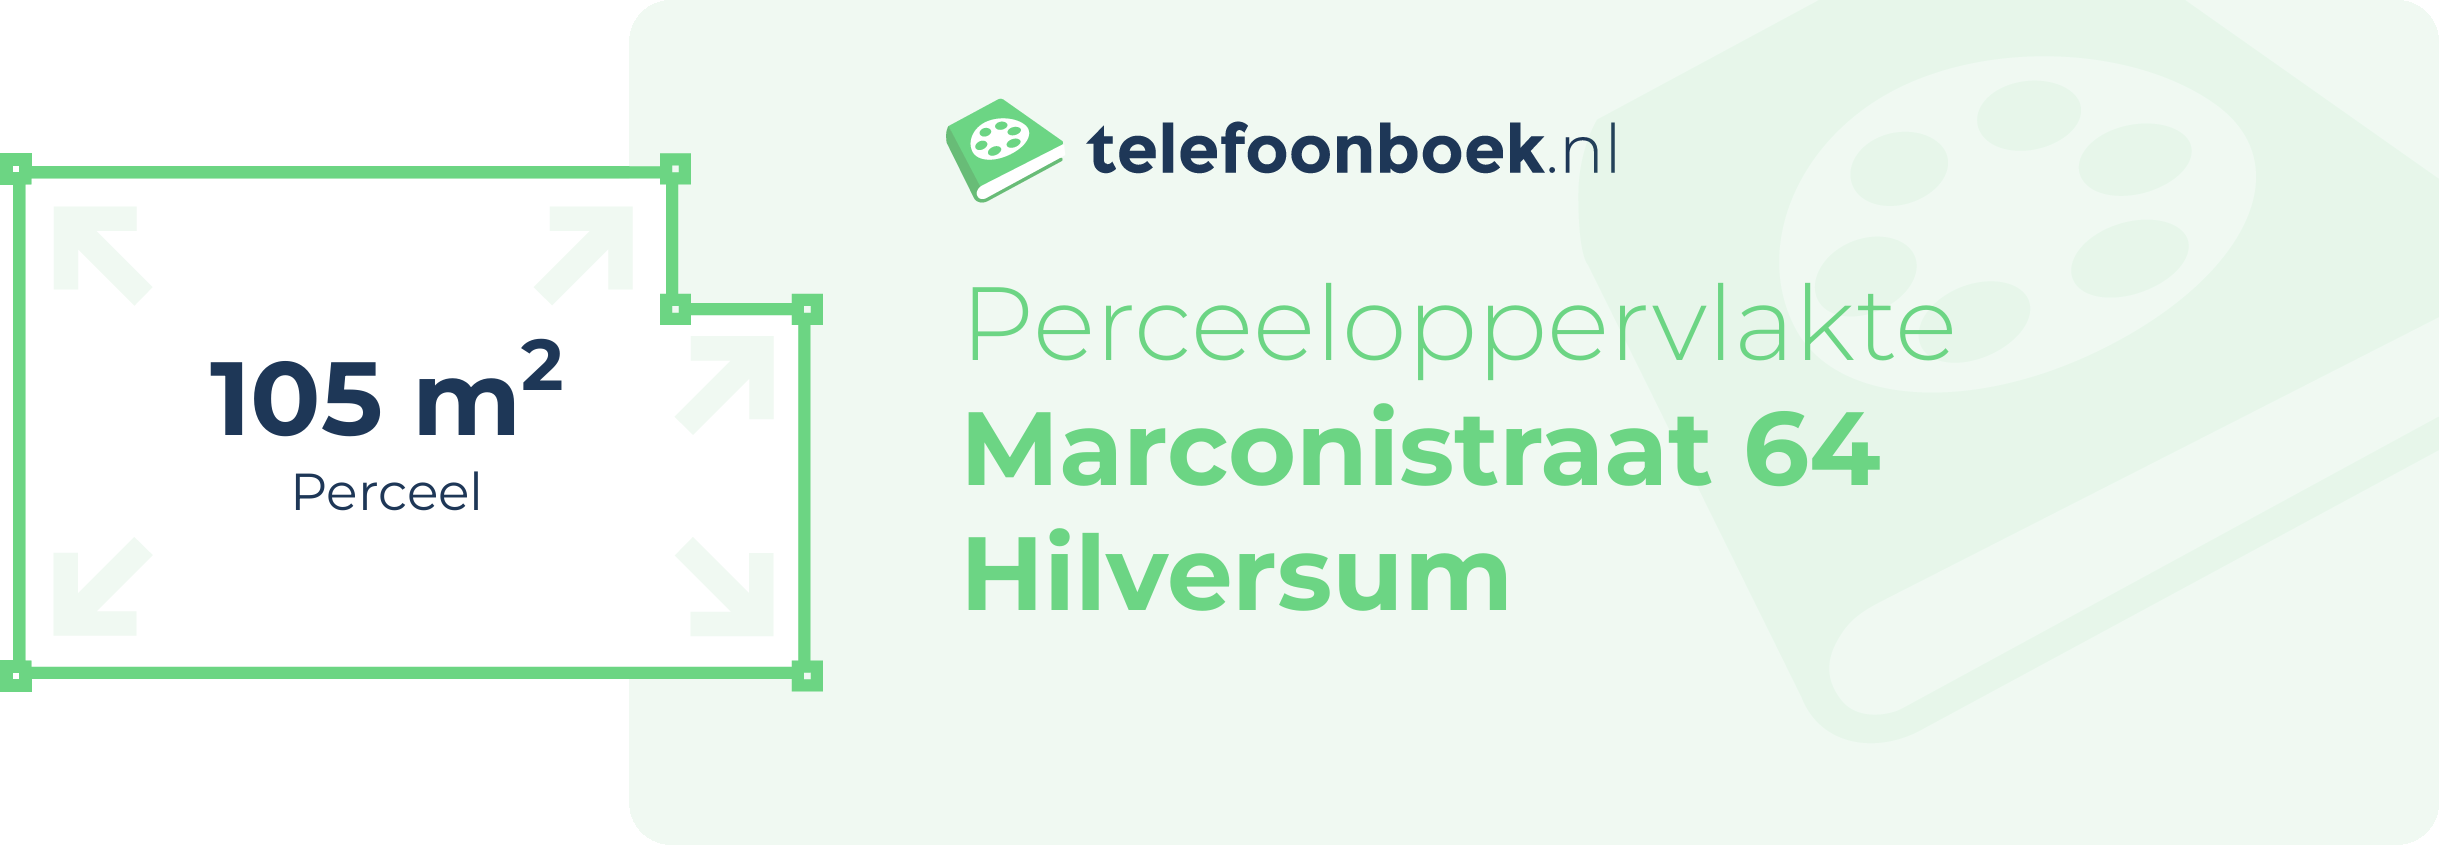 Perceeloppervlakte Marconistraat 64 Hilversum